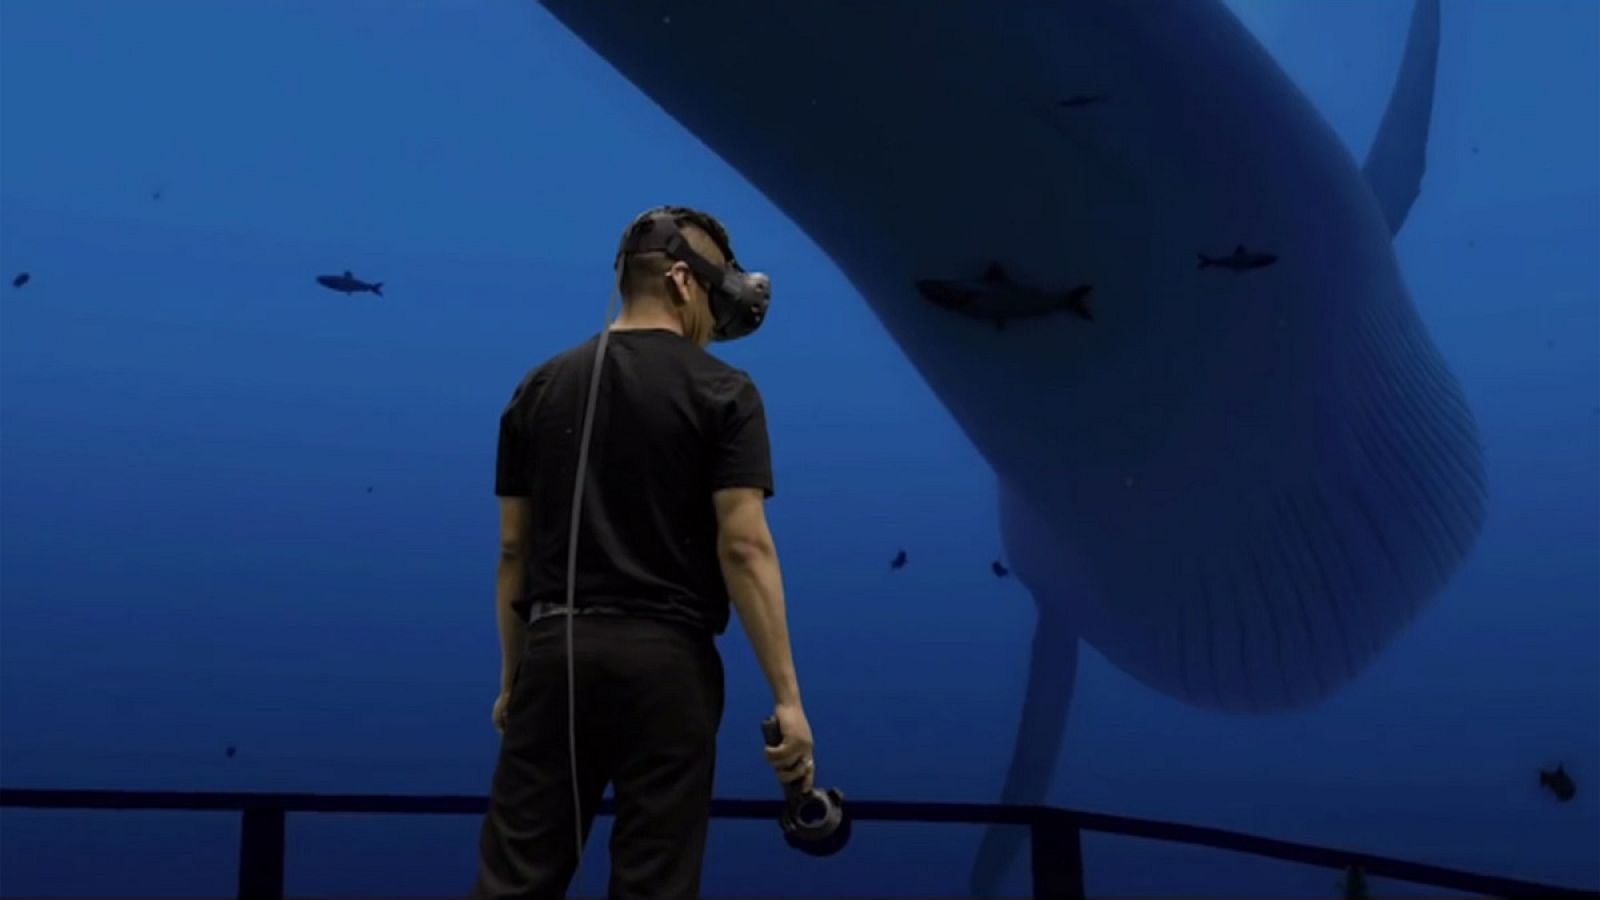 El casco de realidad virtual Vive permite una experiencia totalmente inmersiva.